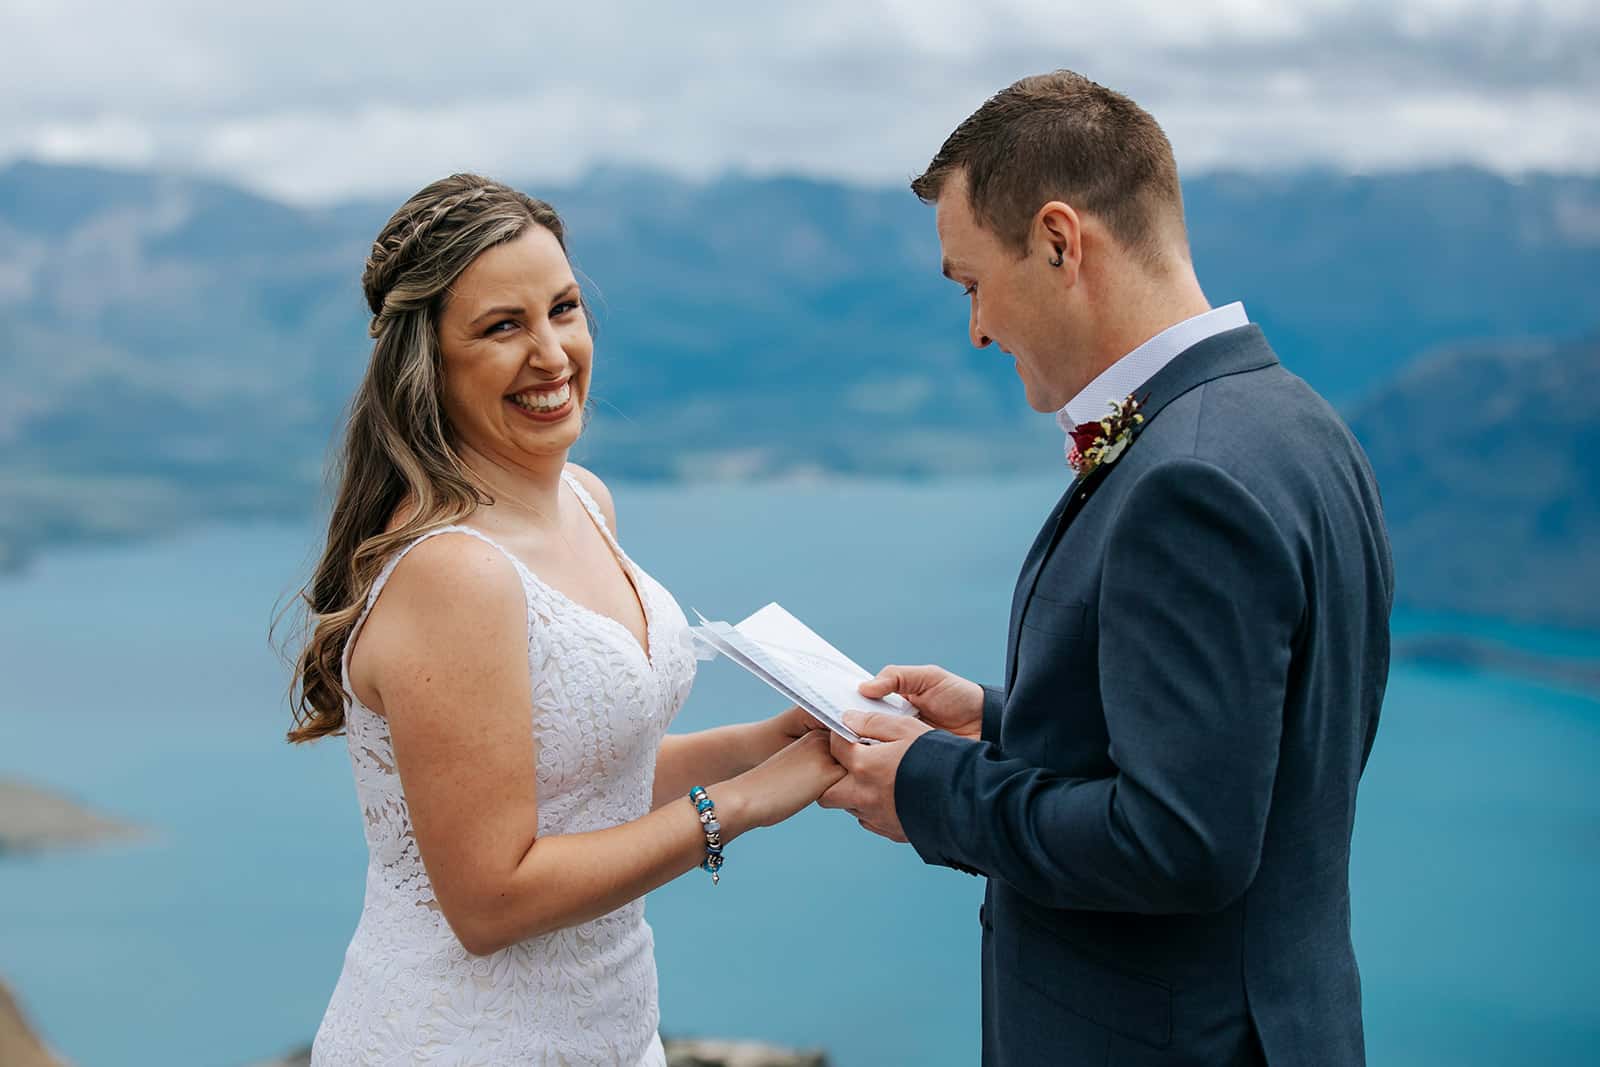 Heli Wedding in Queenstown New Zealand